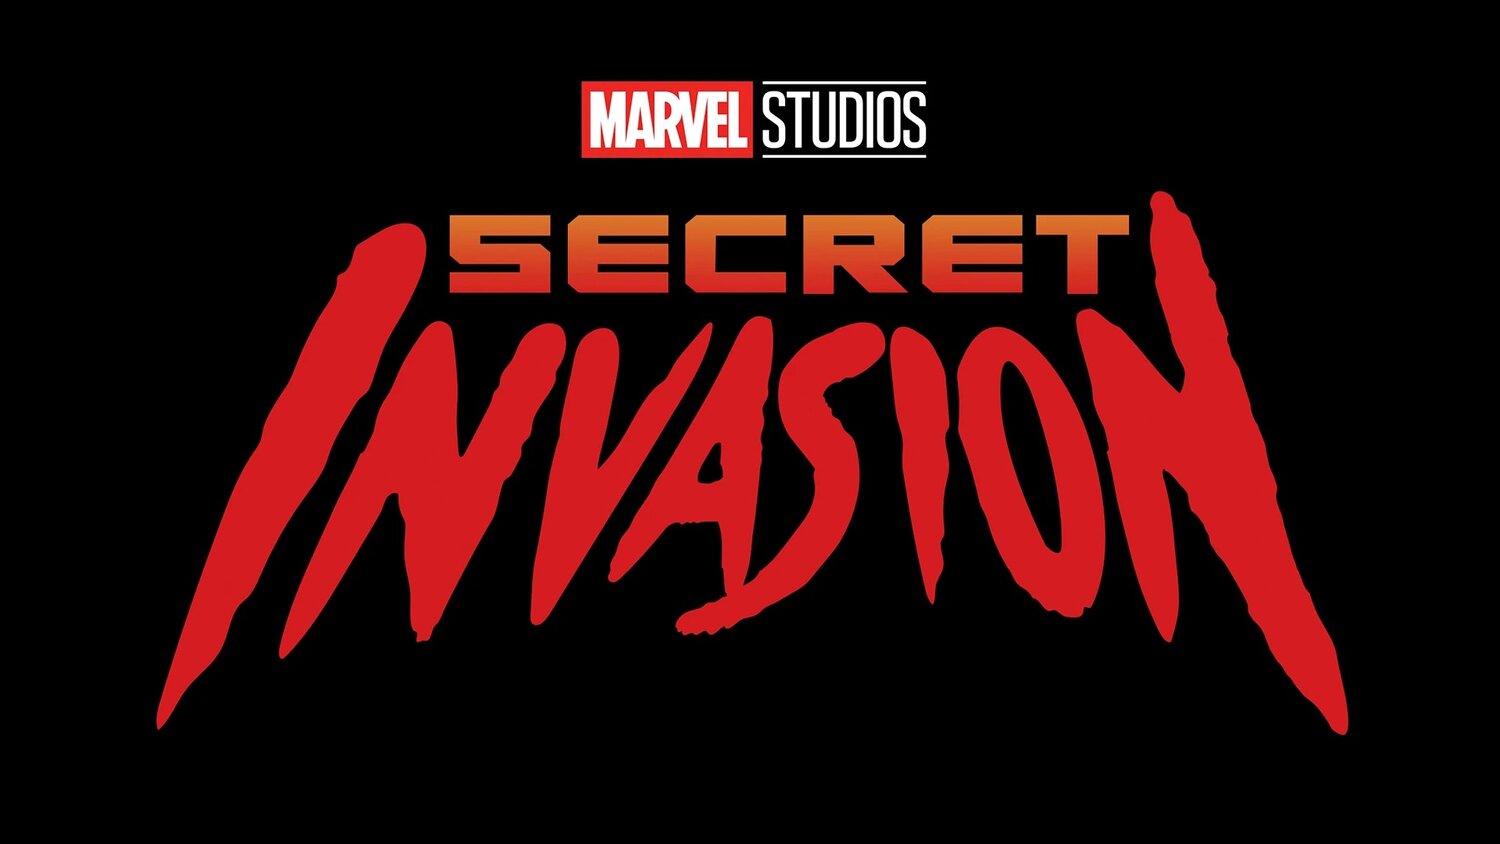 Marvels' Secret Invasion